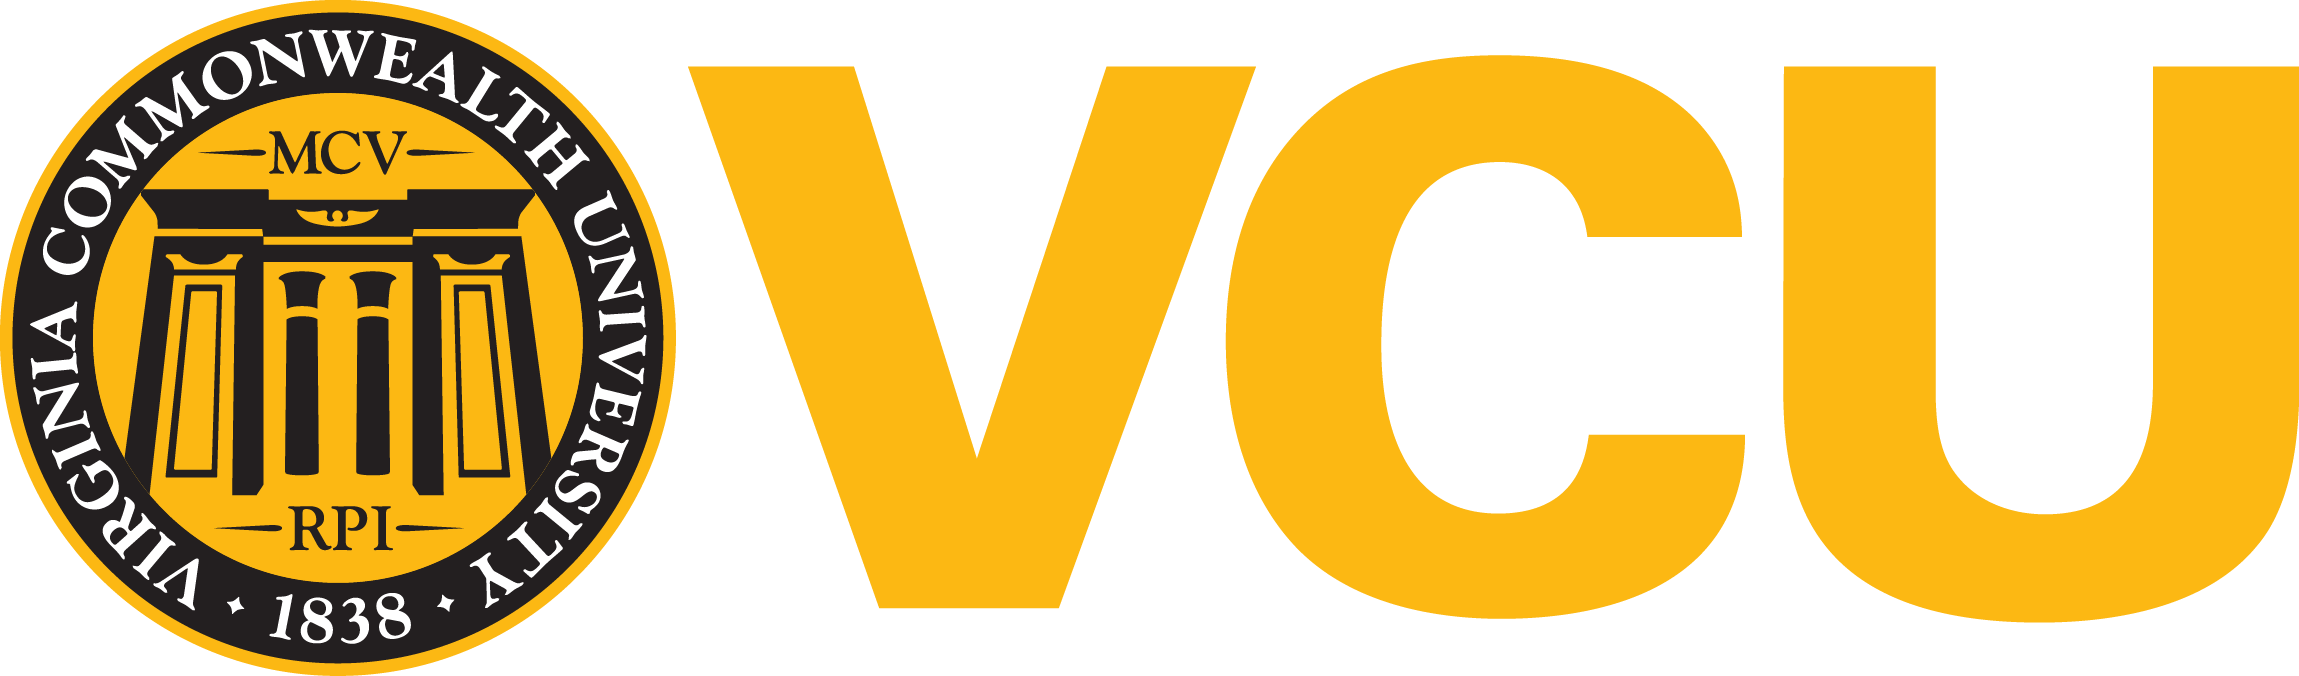 vcu logo